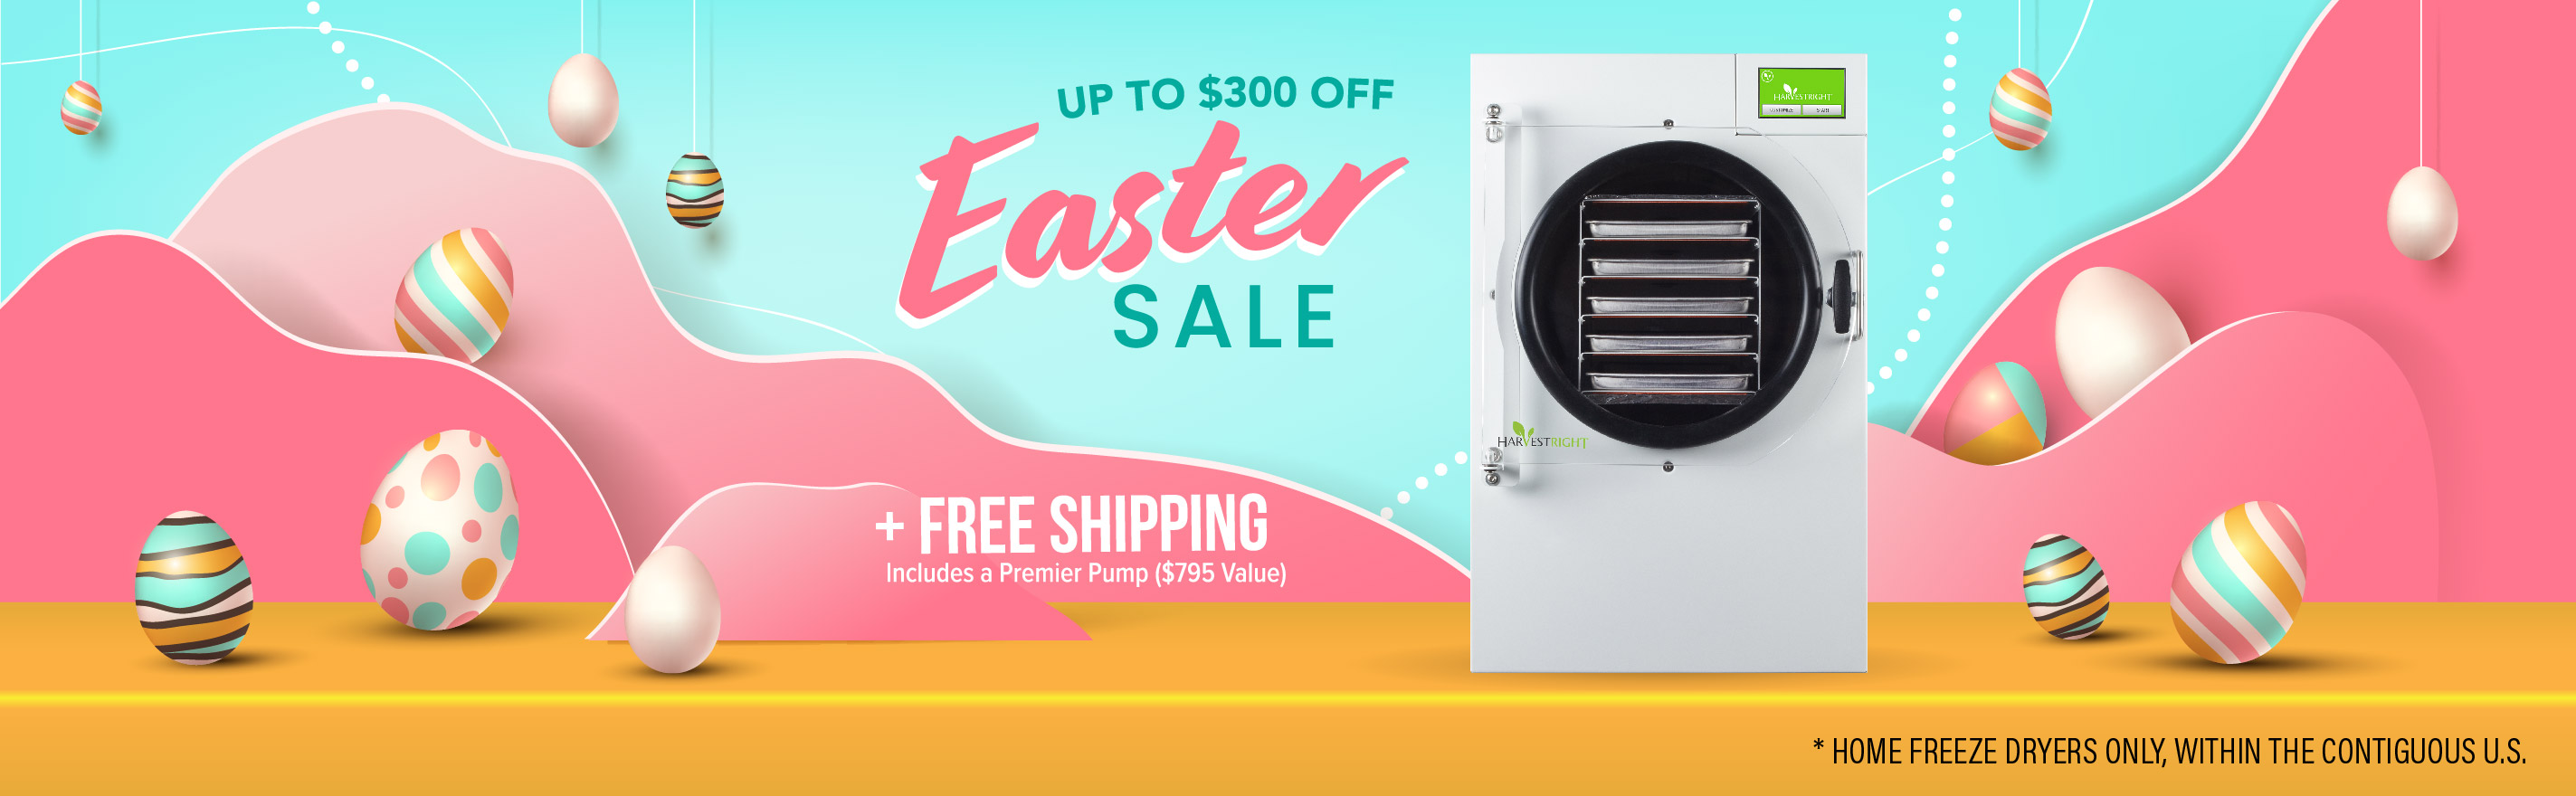 Easter Sale_up to $300 off_desktop